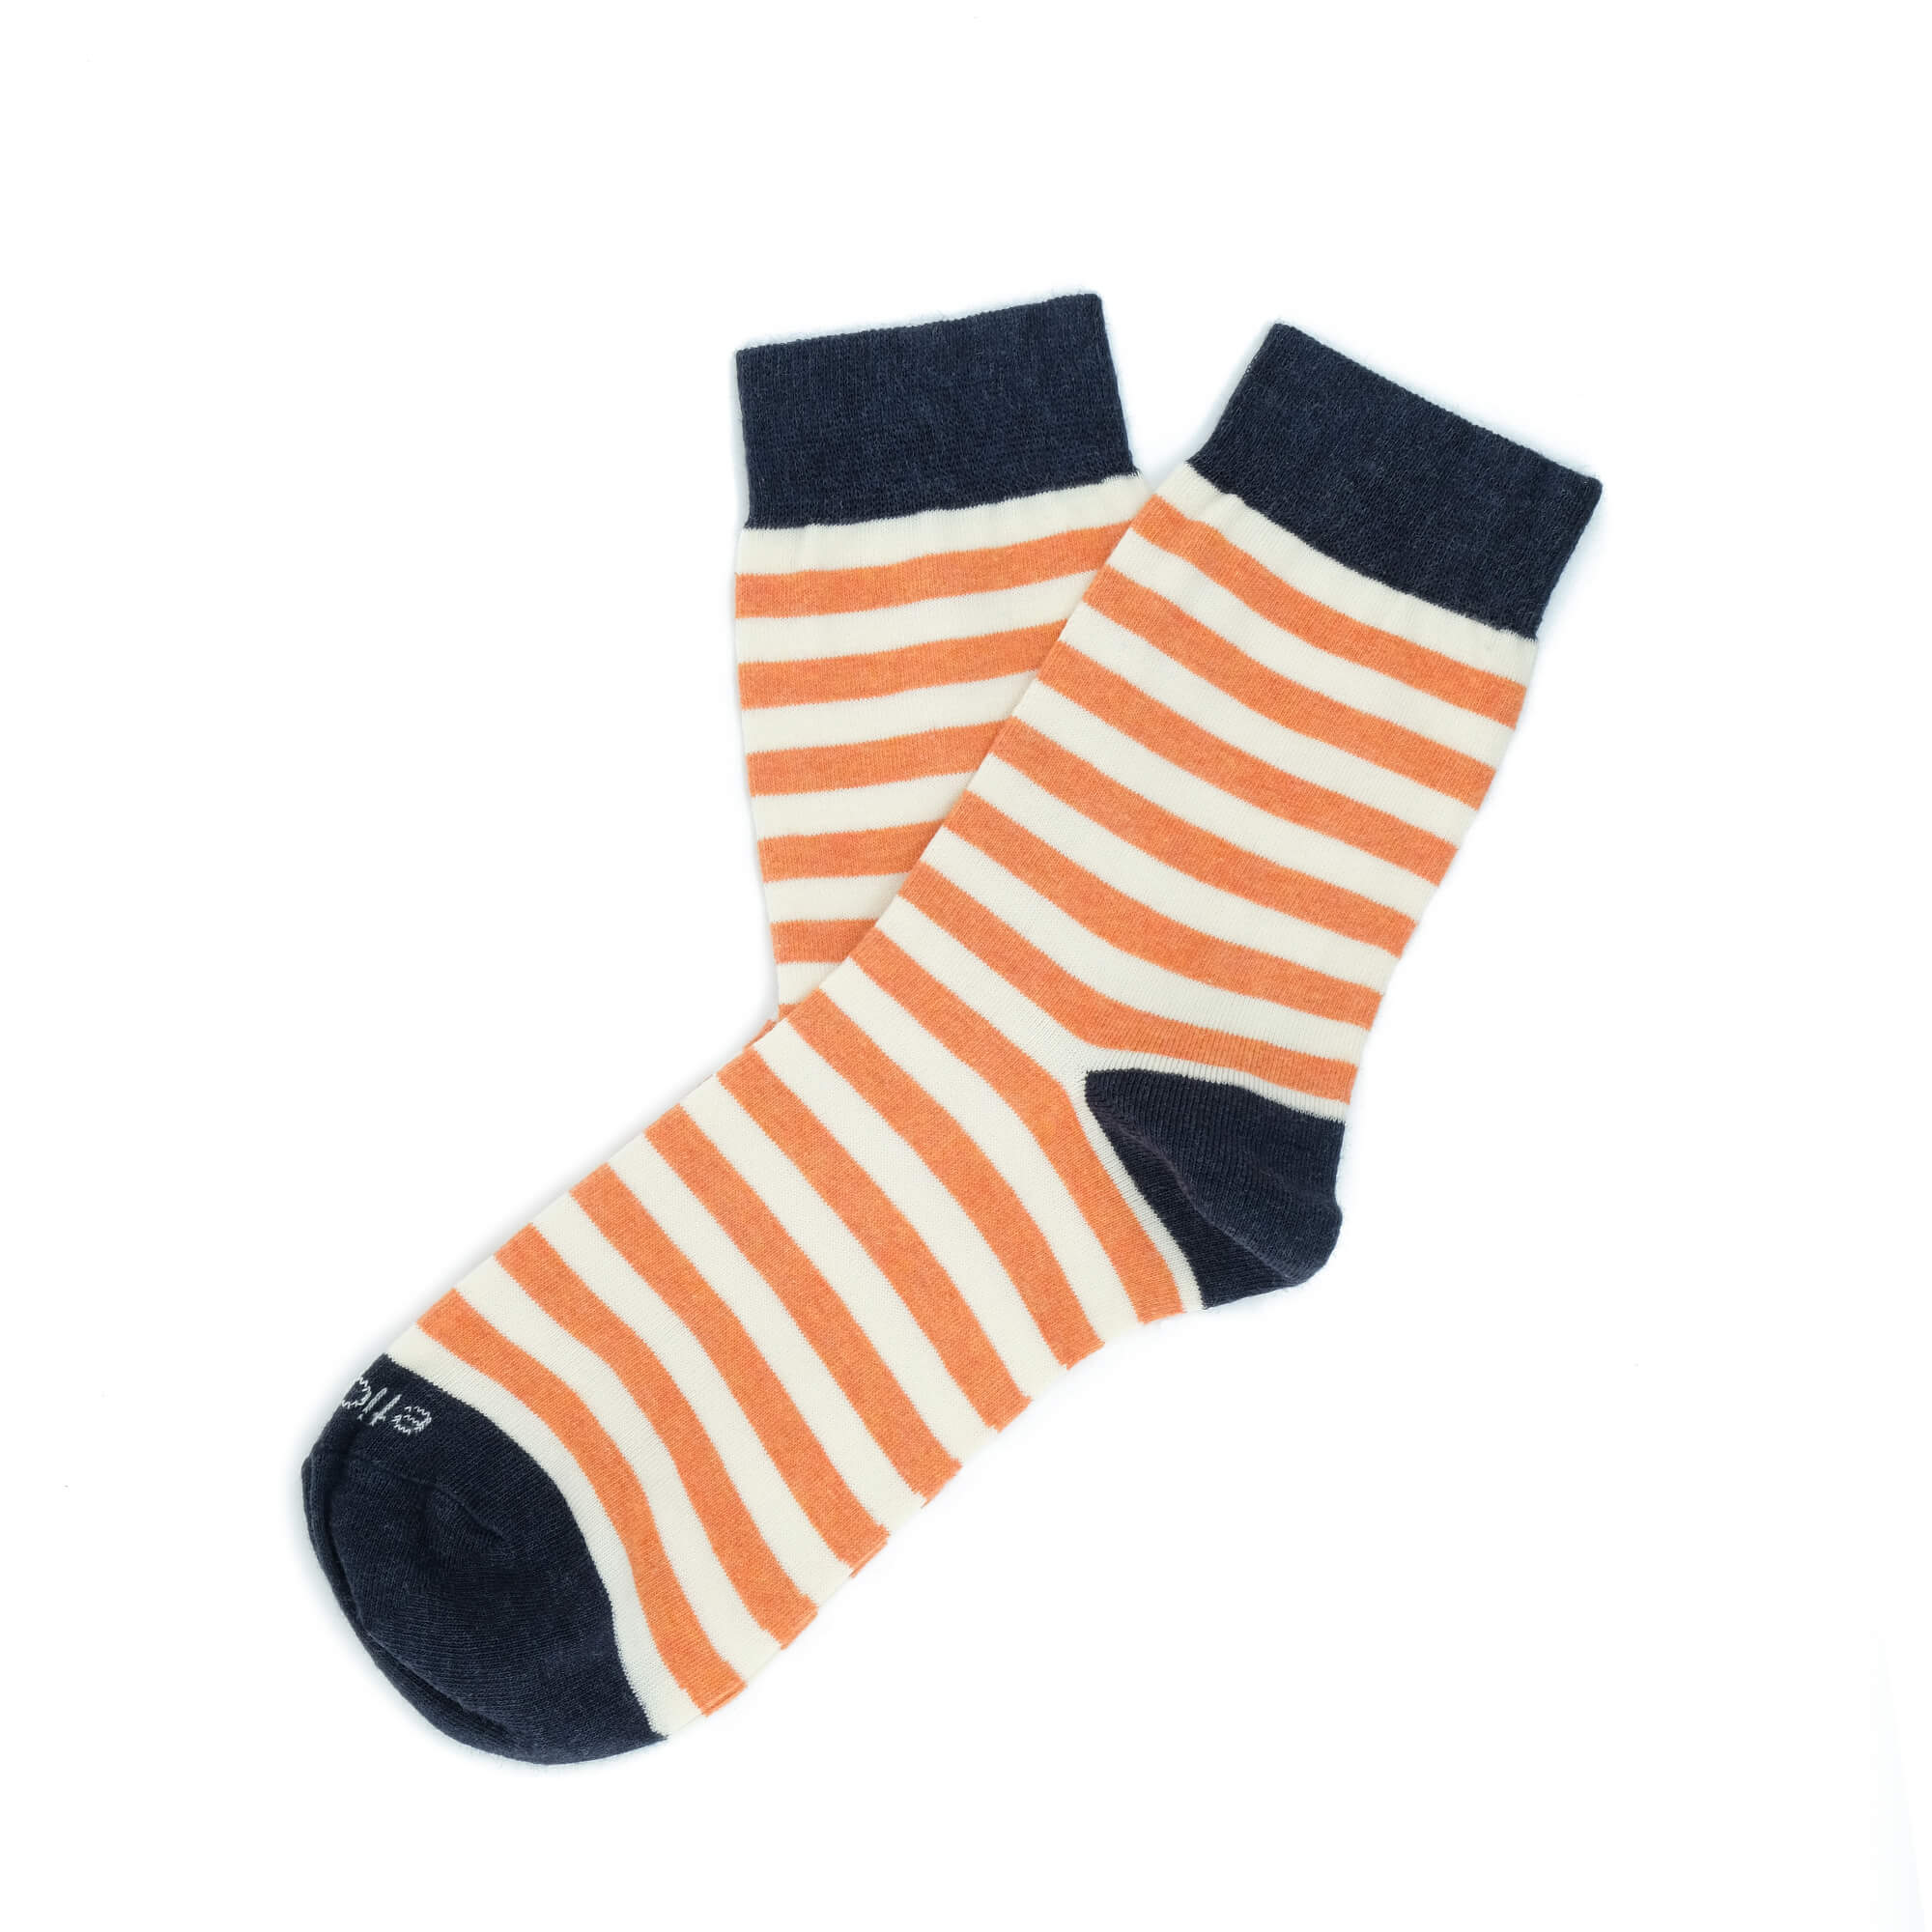 Womens Socks - Abbey Stripes Women's Socks - Orange/Navy⎪Etiquette Clothiers